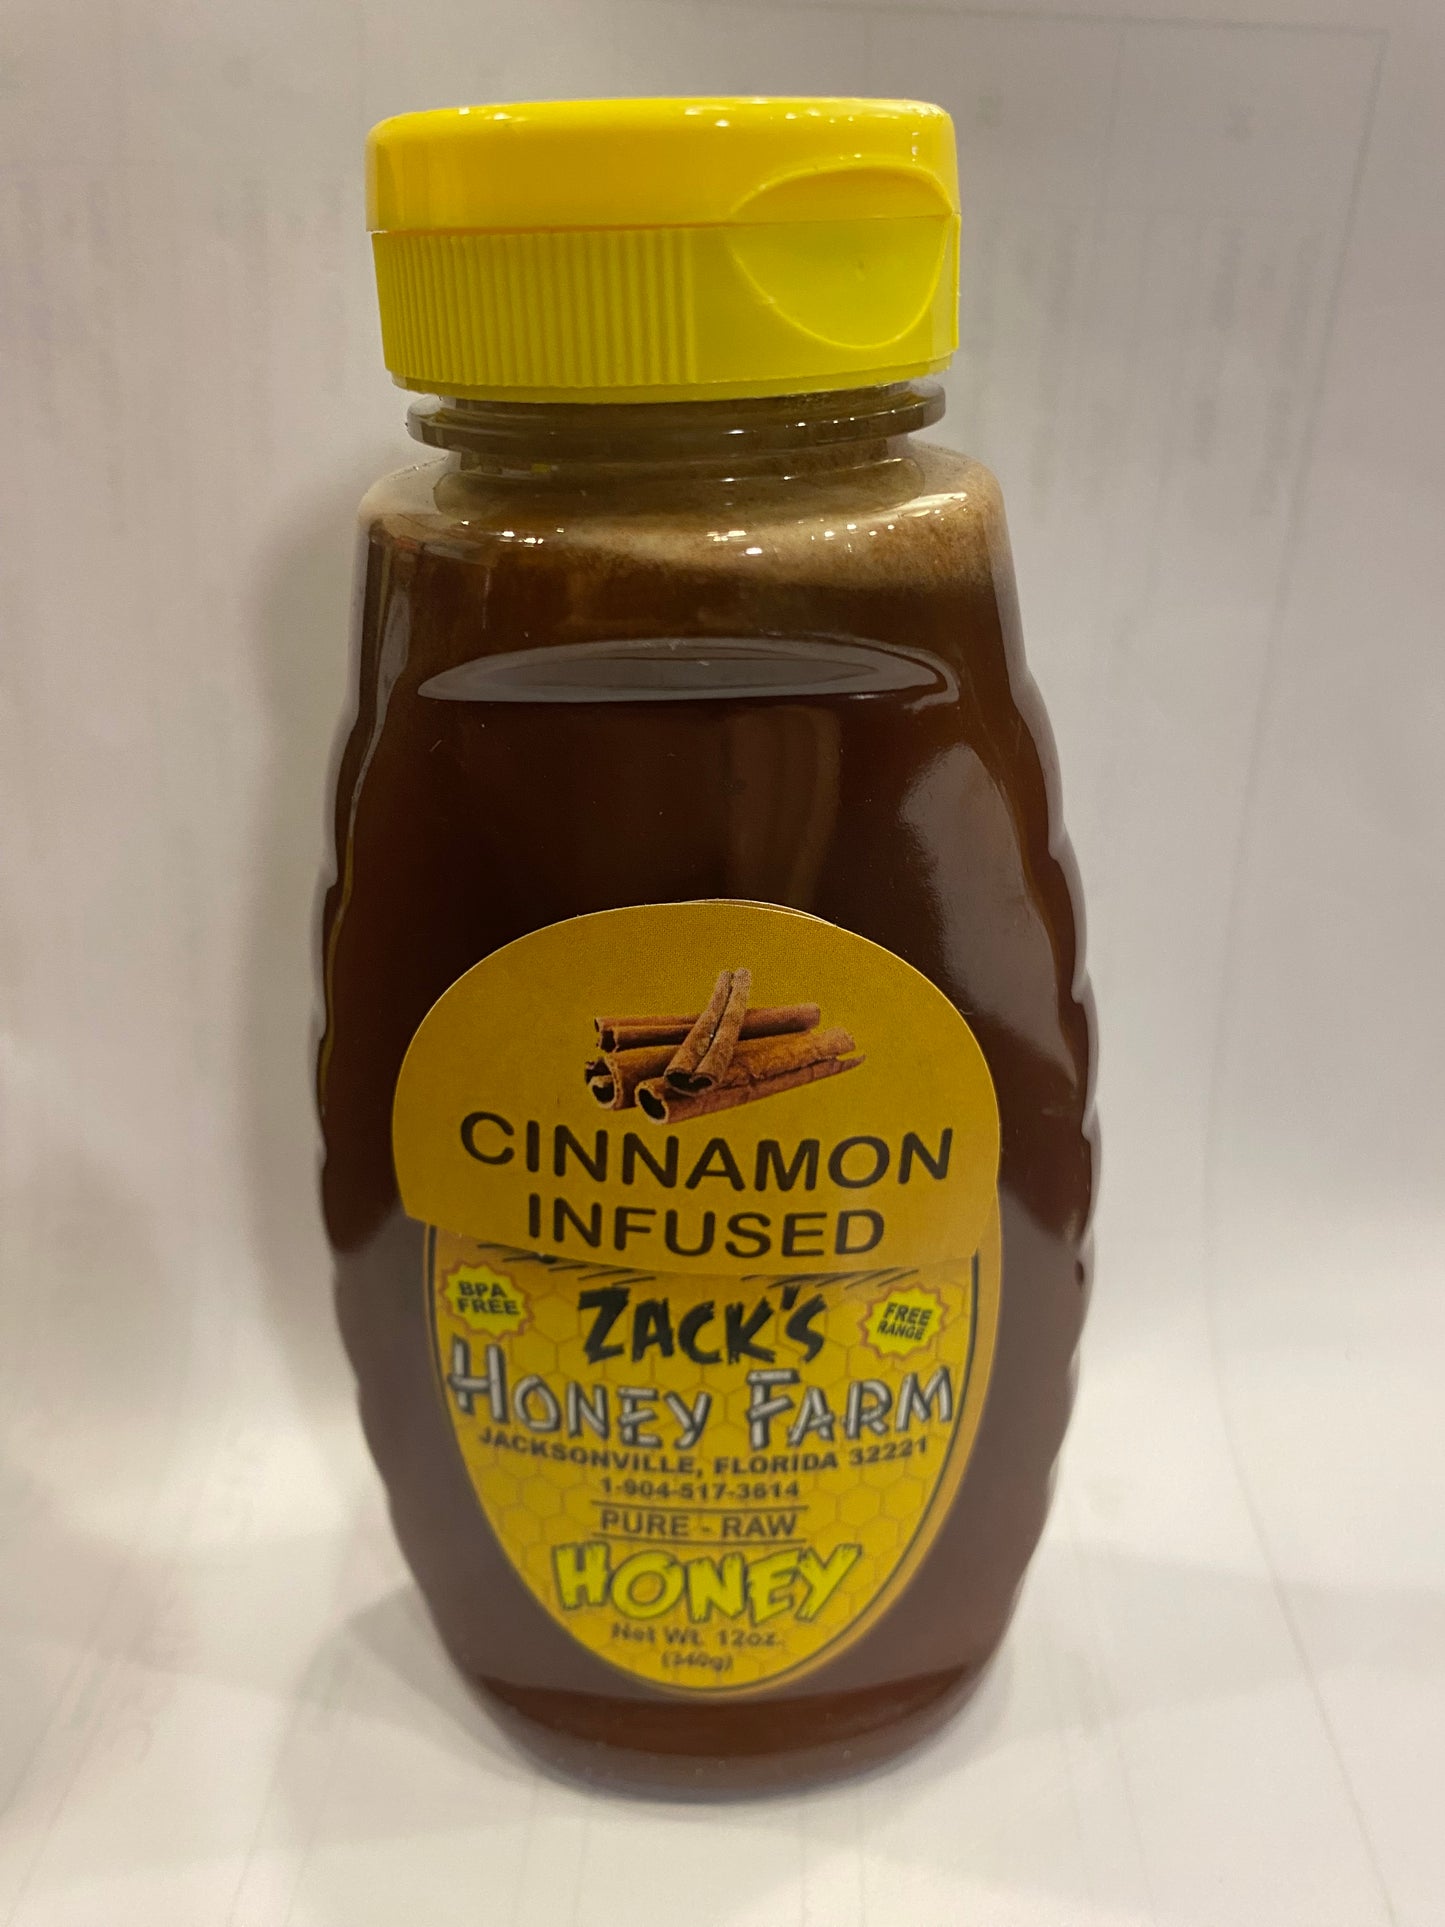 Cinnamon infused honey 12 oz.